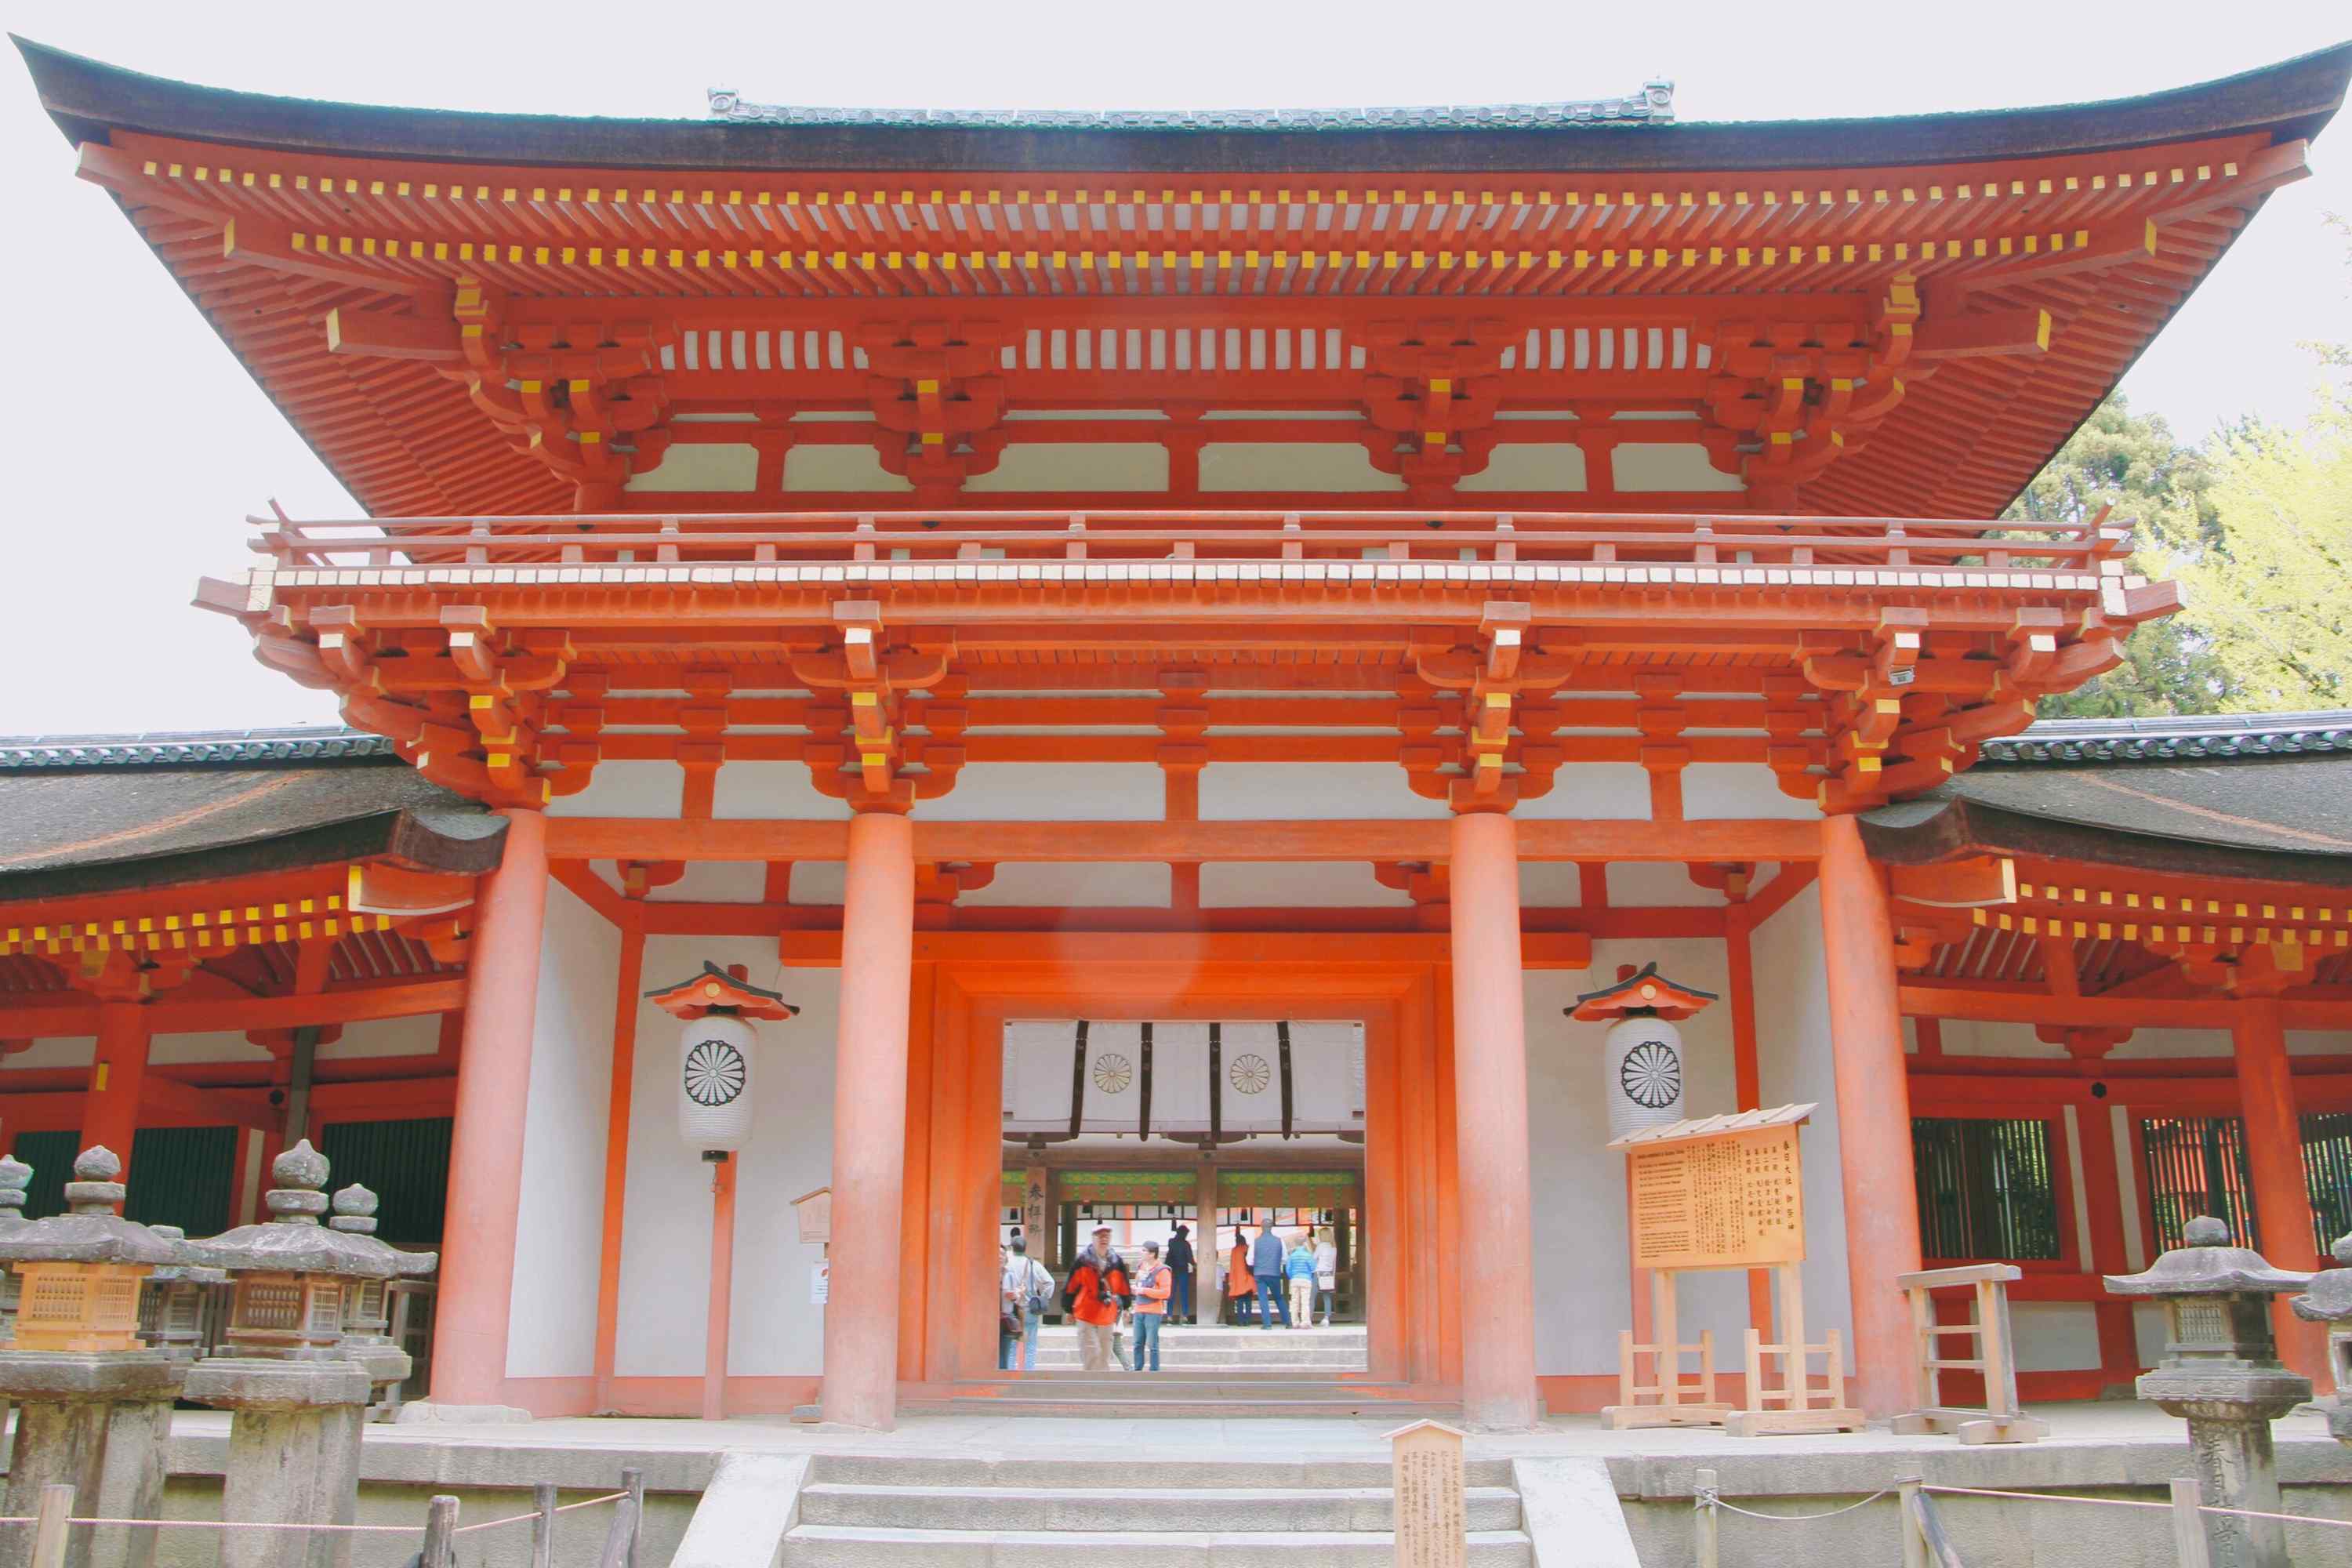 奈良传统寺庙春日大社唯美桌面壁纸